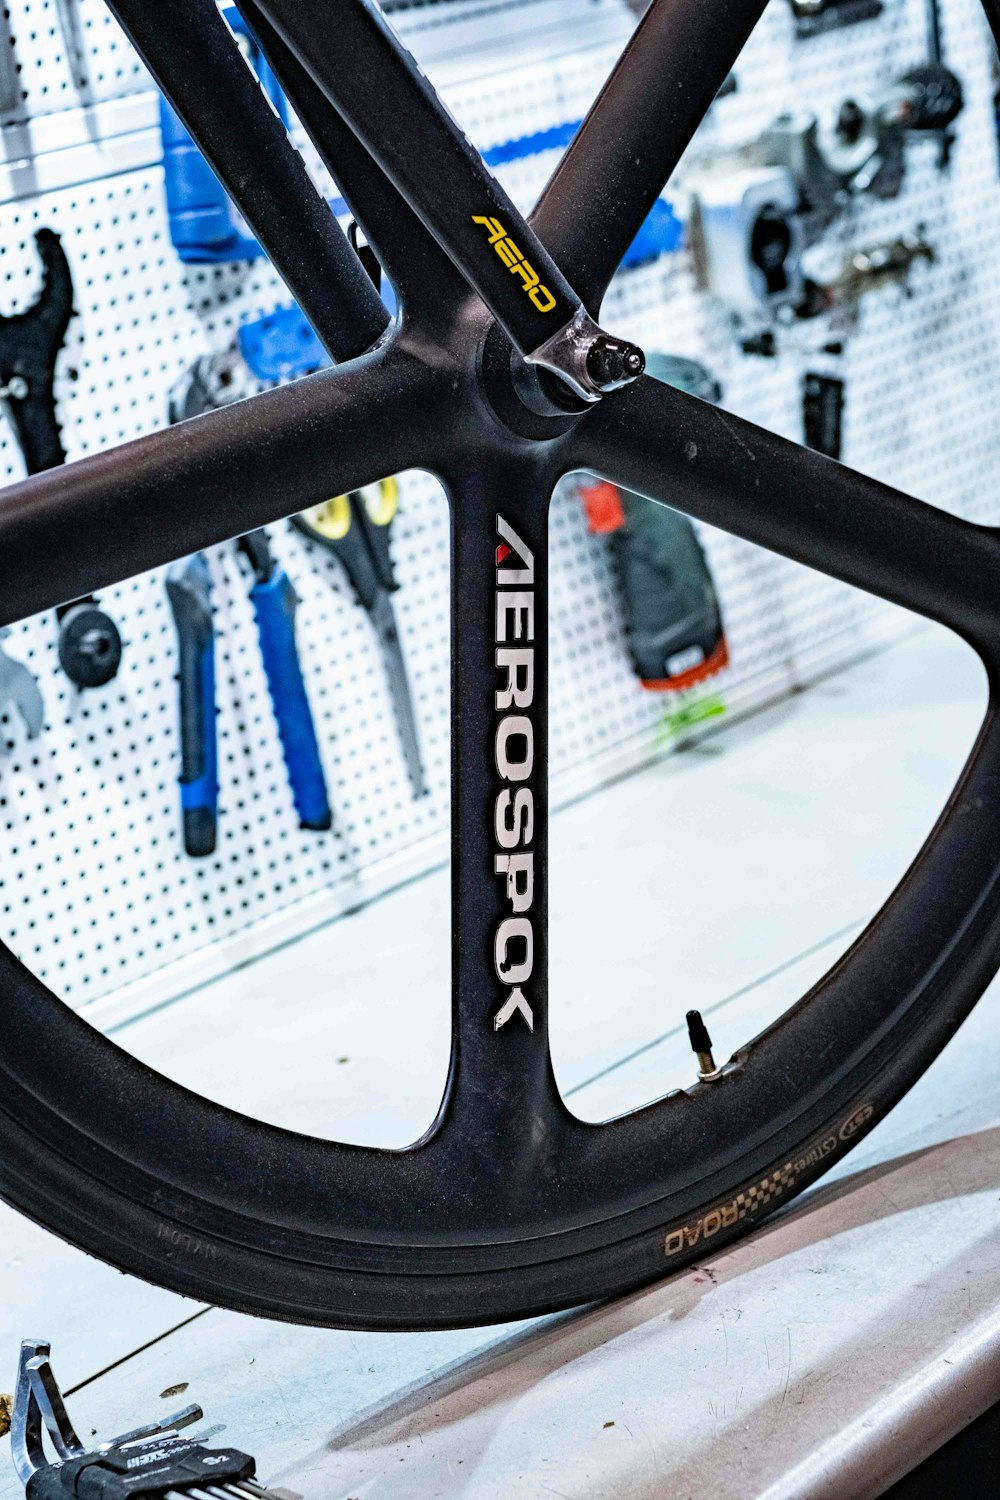 a close up of a bike tire in a shop